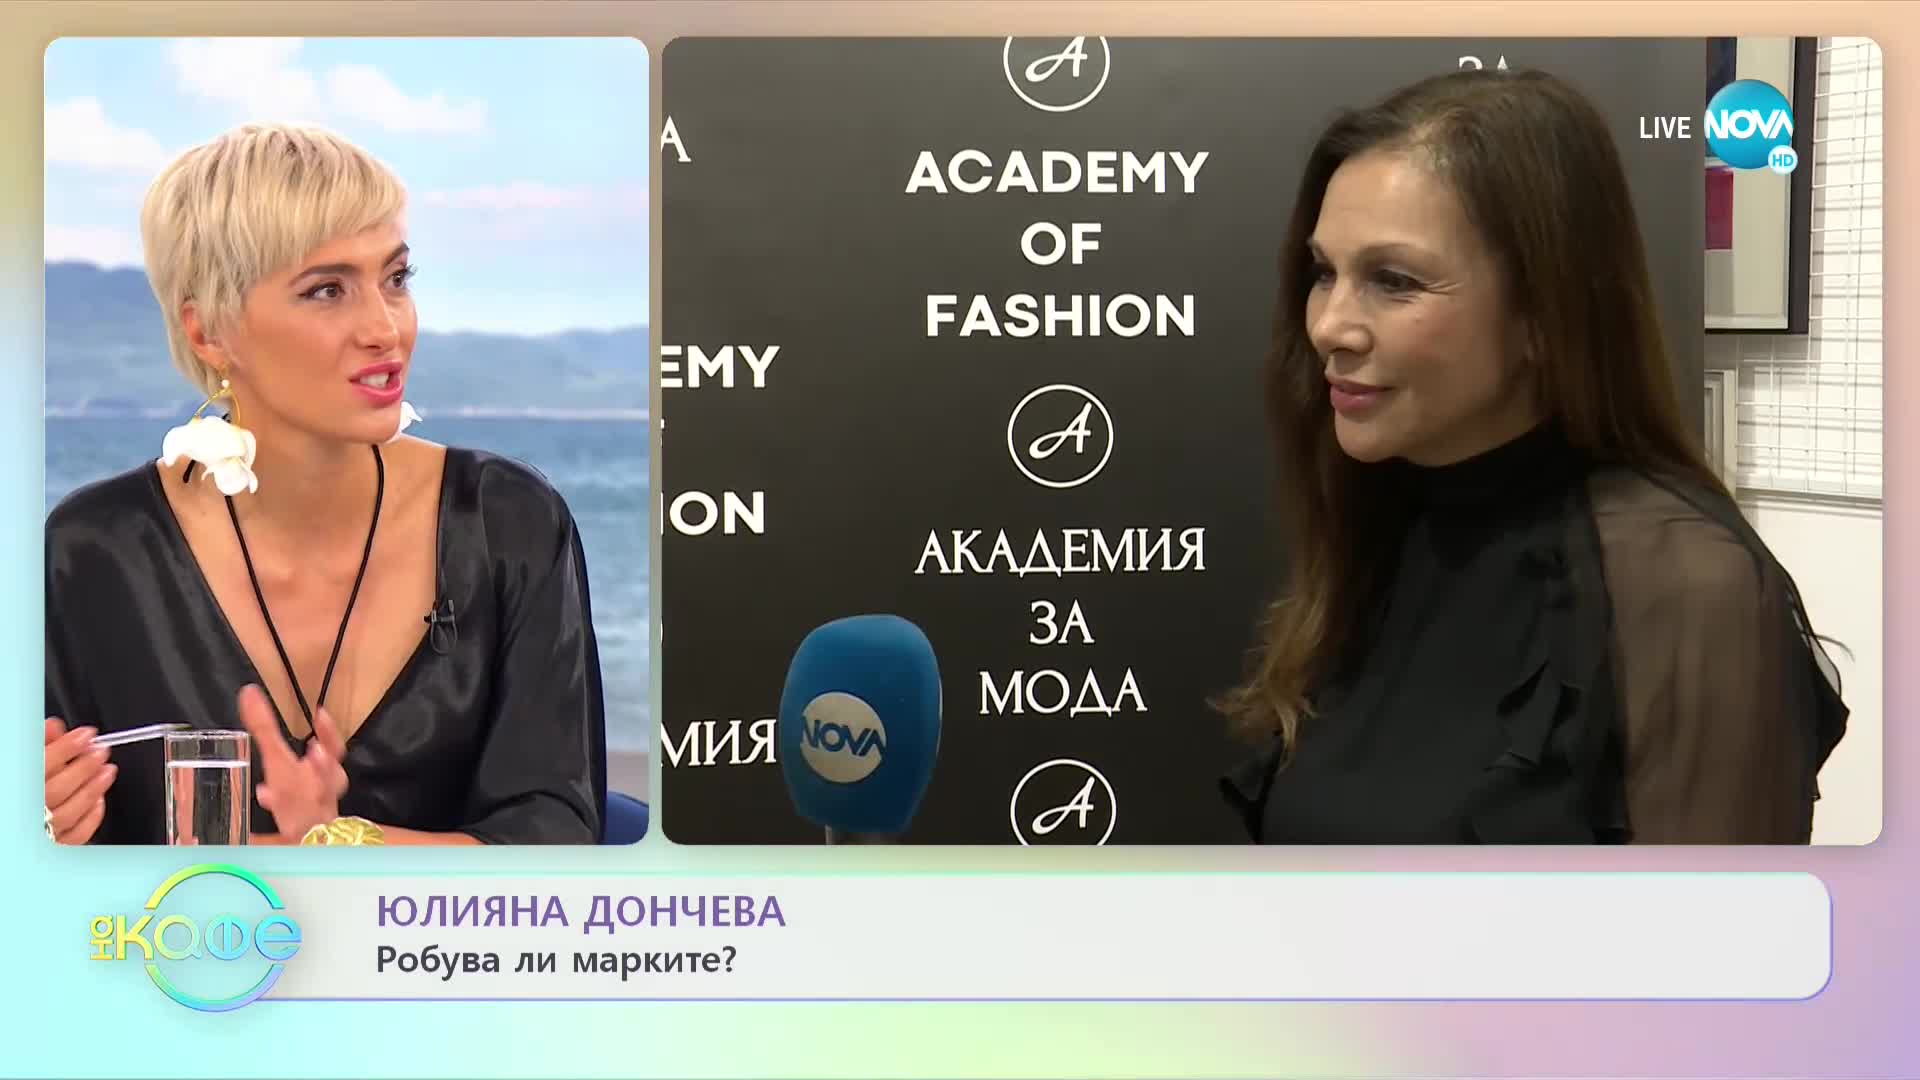 Юлияна Дончева: Обувките са моята слабост